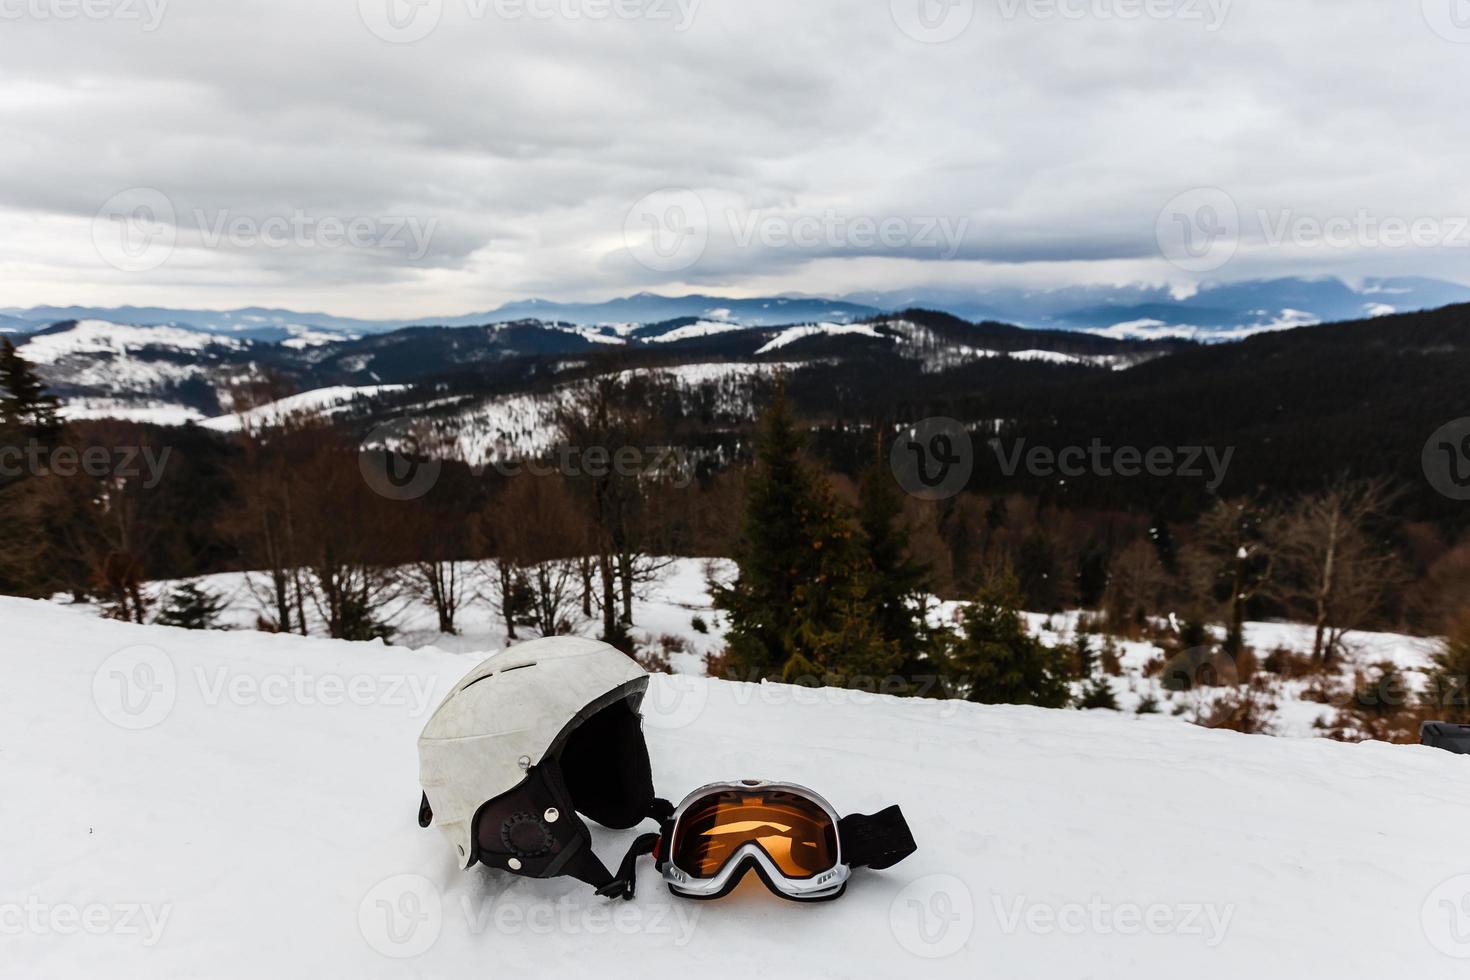 capacete de esqui e óculos de esqui isolados no fundo branco foto